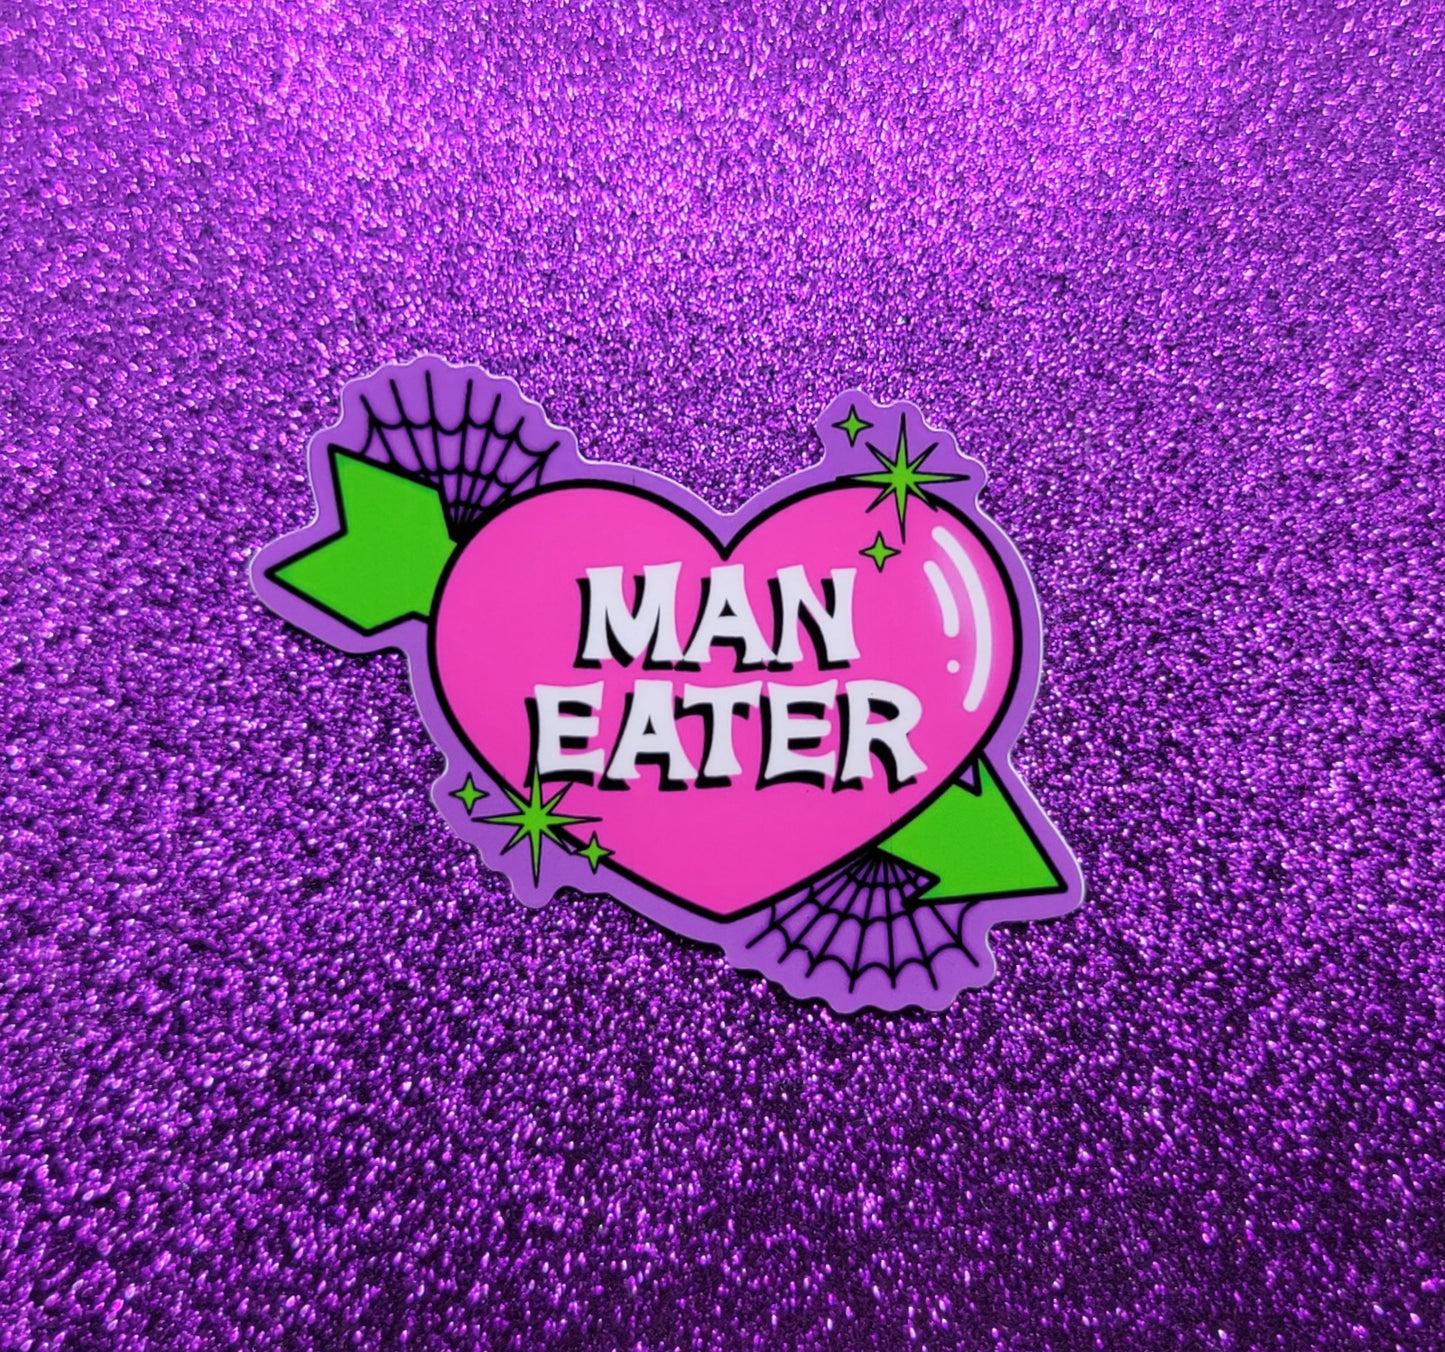 Maneater Sticker 3"x3"